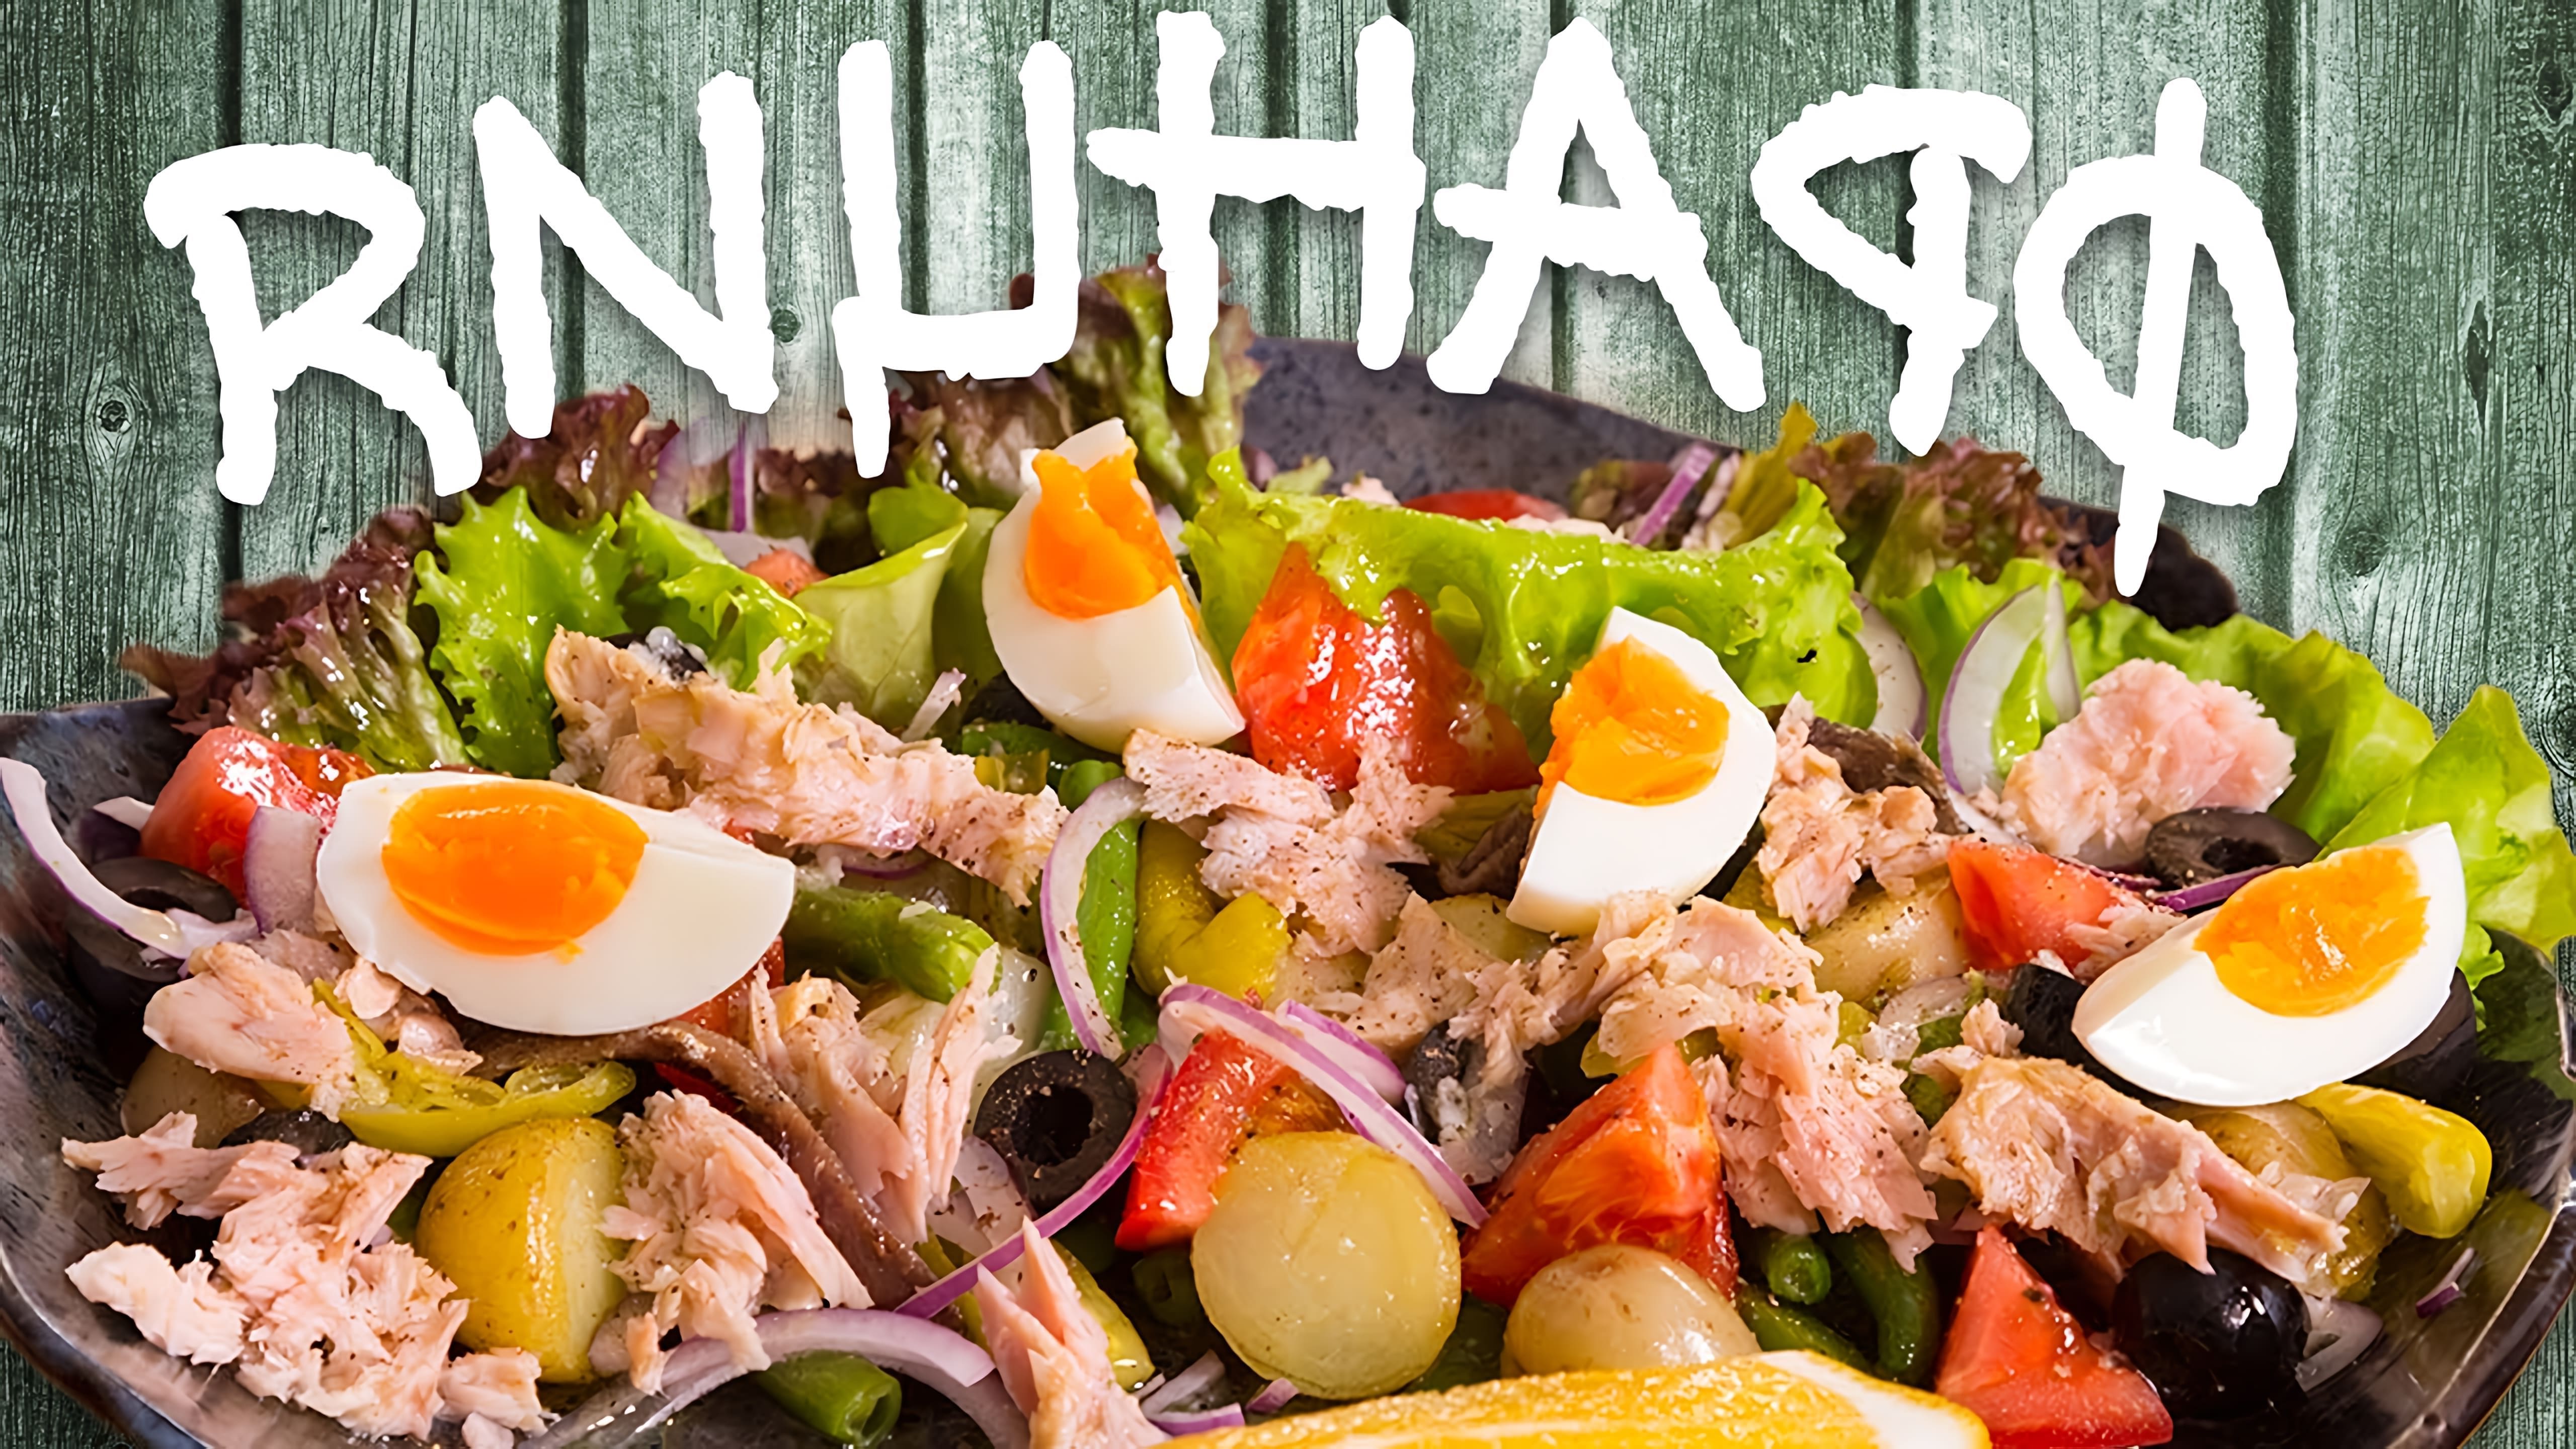 В этом видео демонстрируется рецепт салата "Нисуаз", который является классическим блюдом средиземноморской кухни